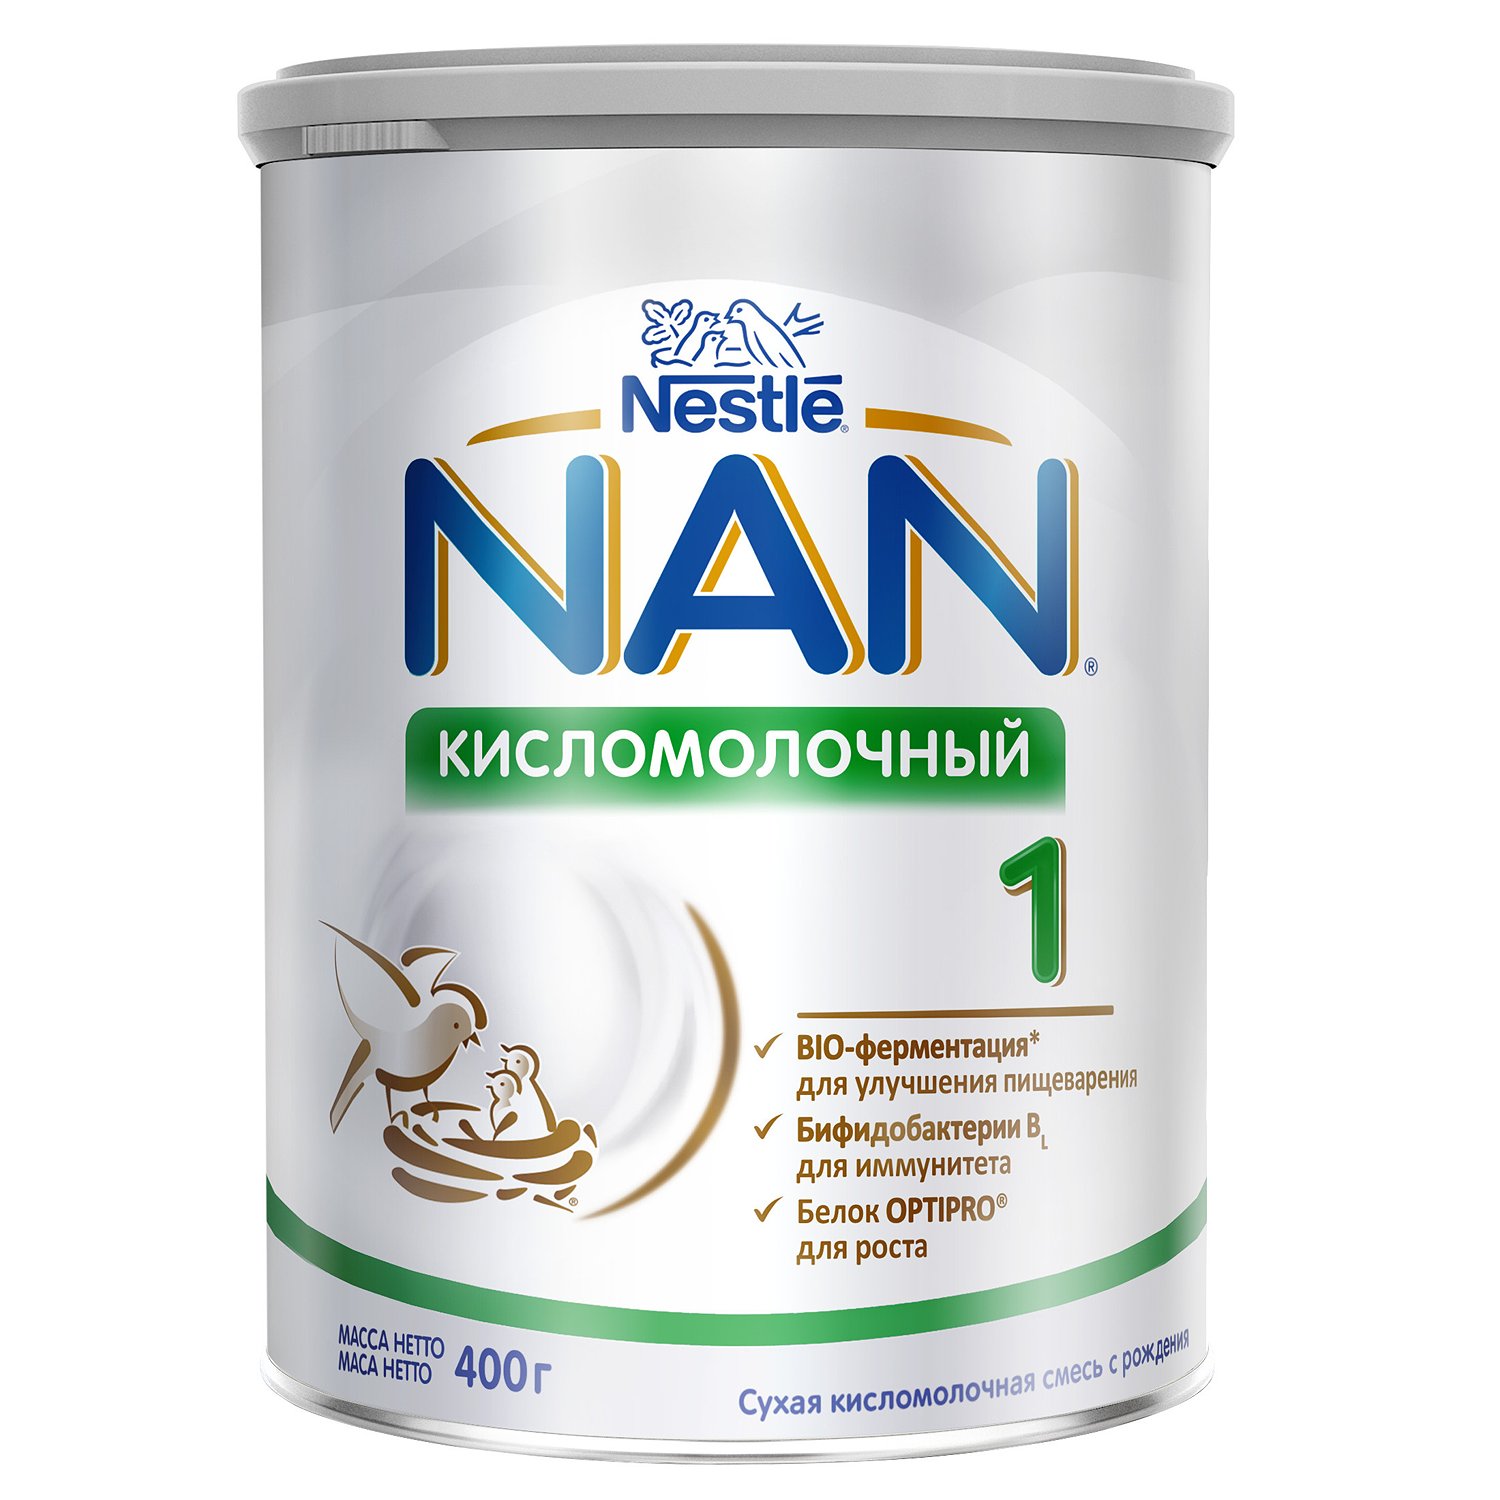 NAN 1 Кисломолочный детская смесь * - 400 г